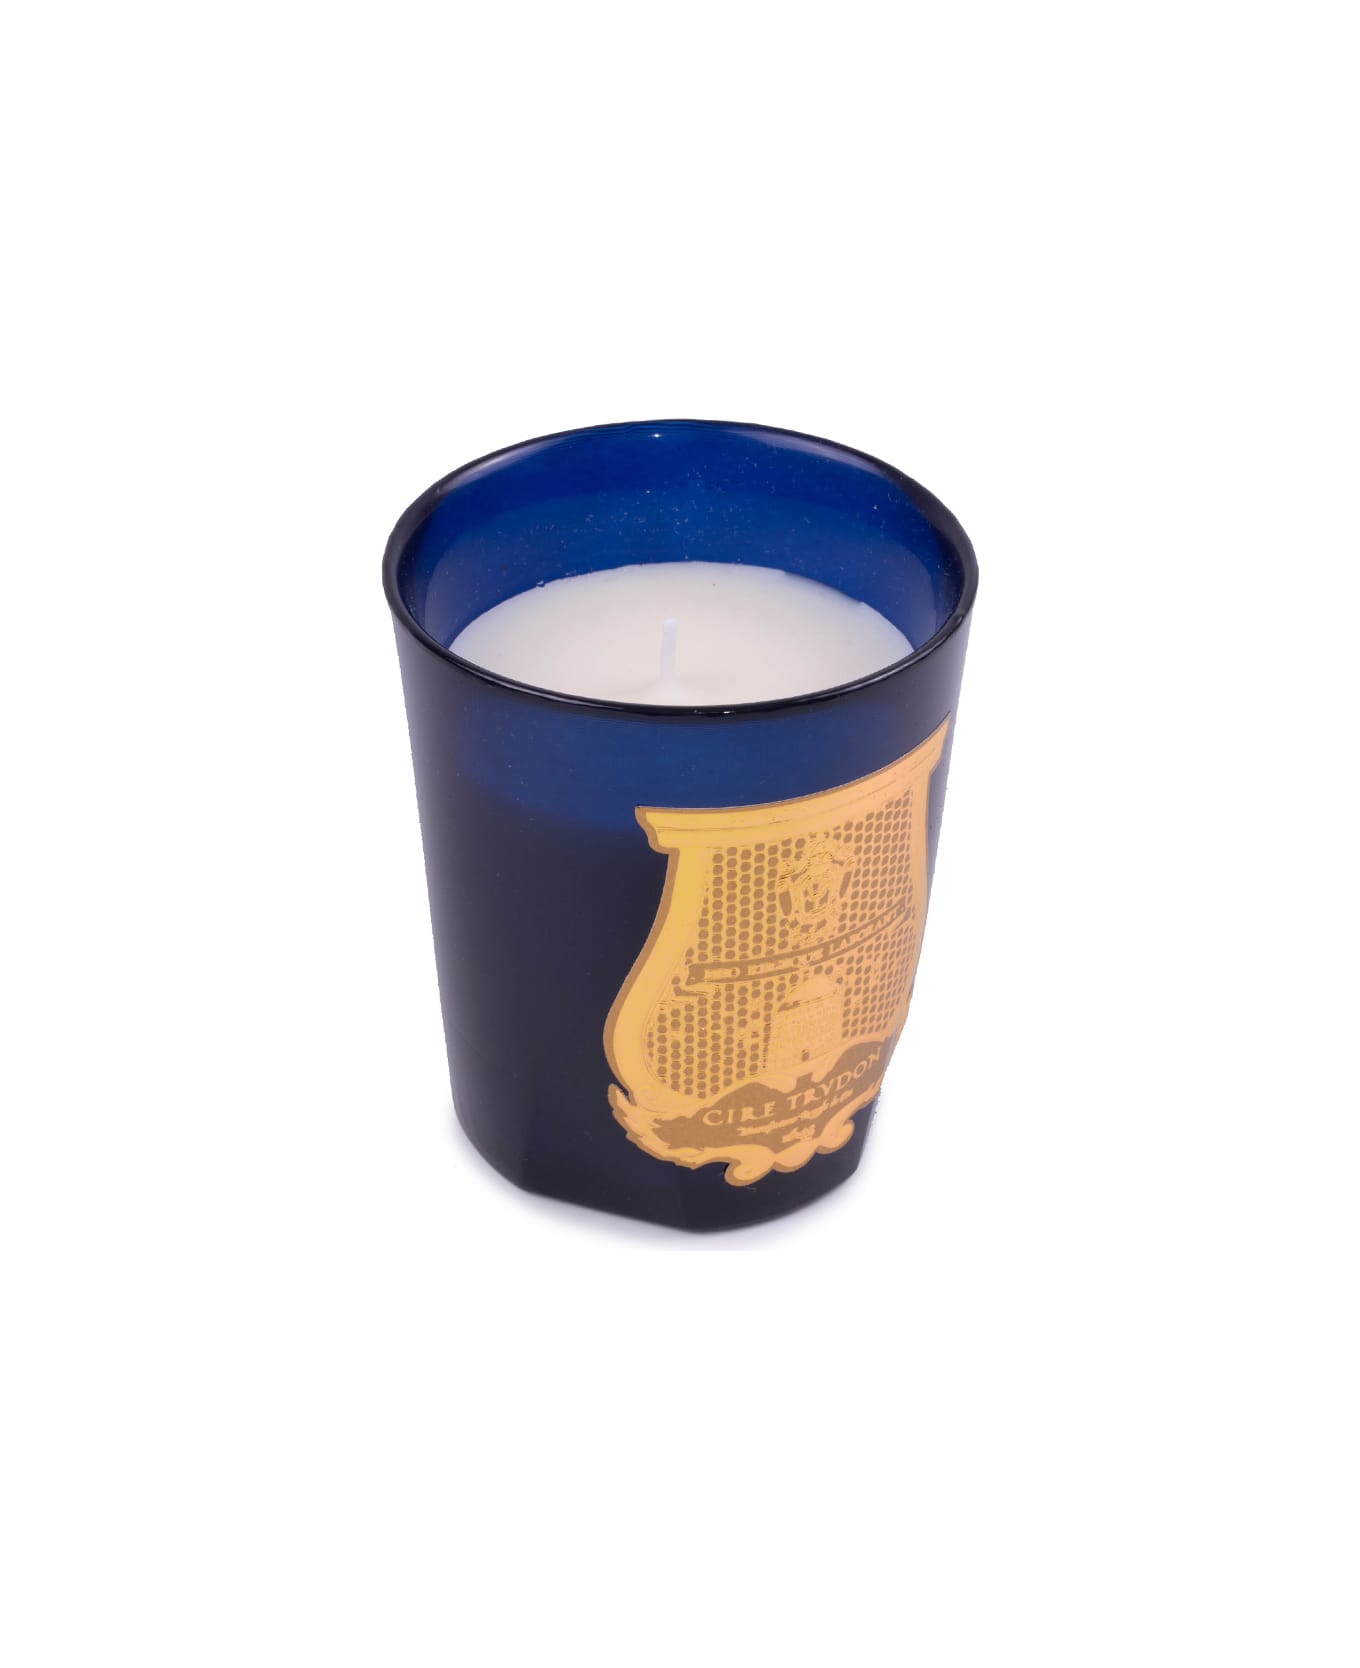 Cire Trudon Estérel Candle - Blue